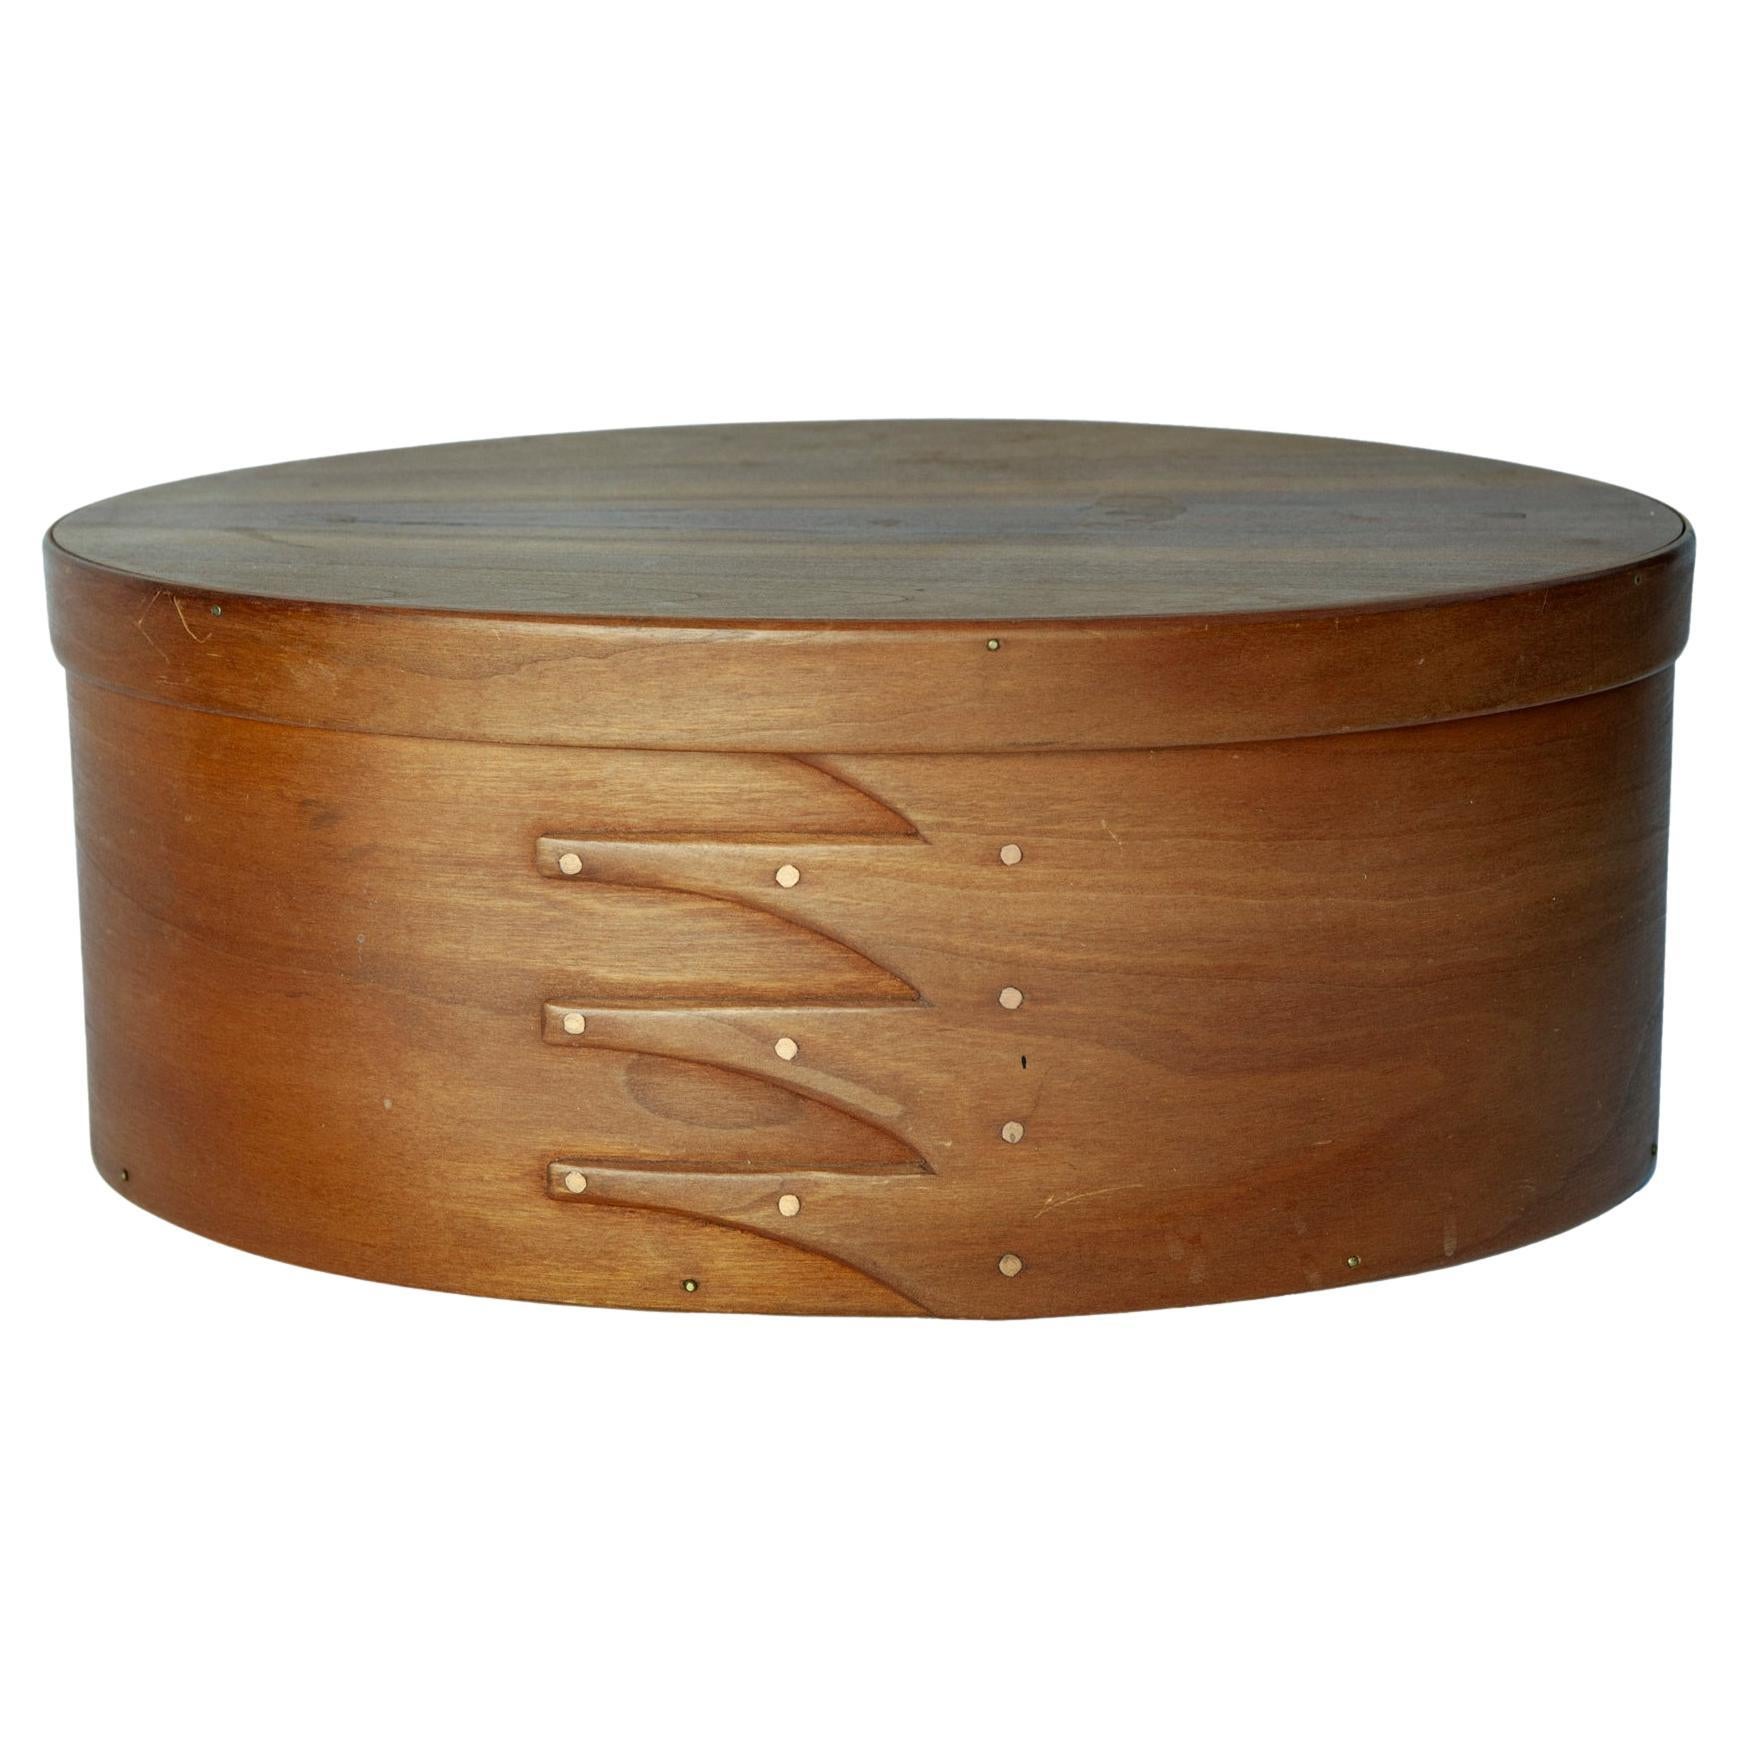 Handgefertigte handwerkliche Oval Kirschbaum Wood Box